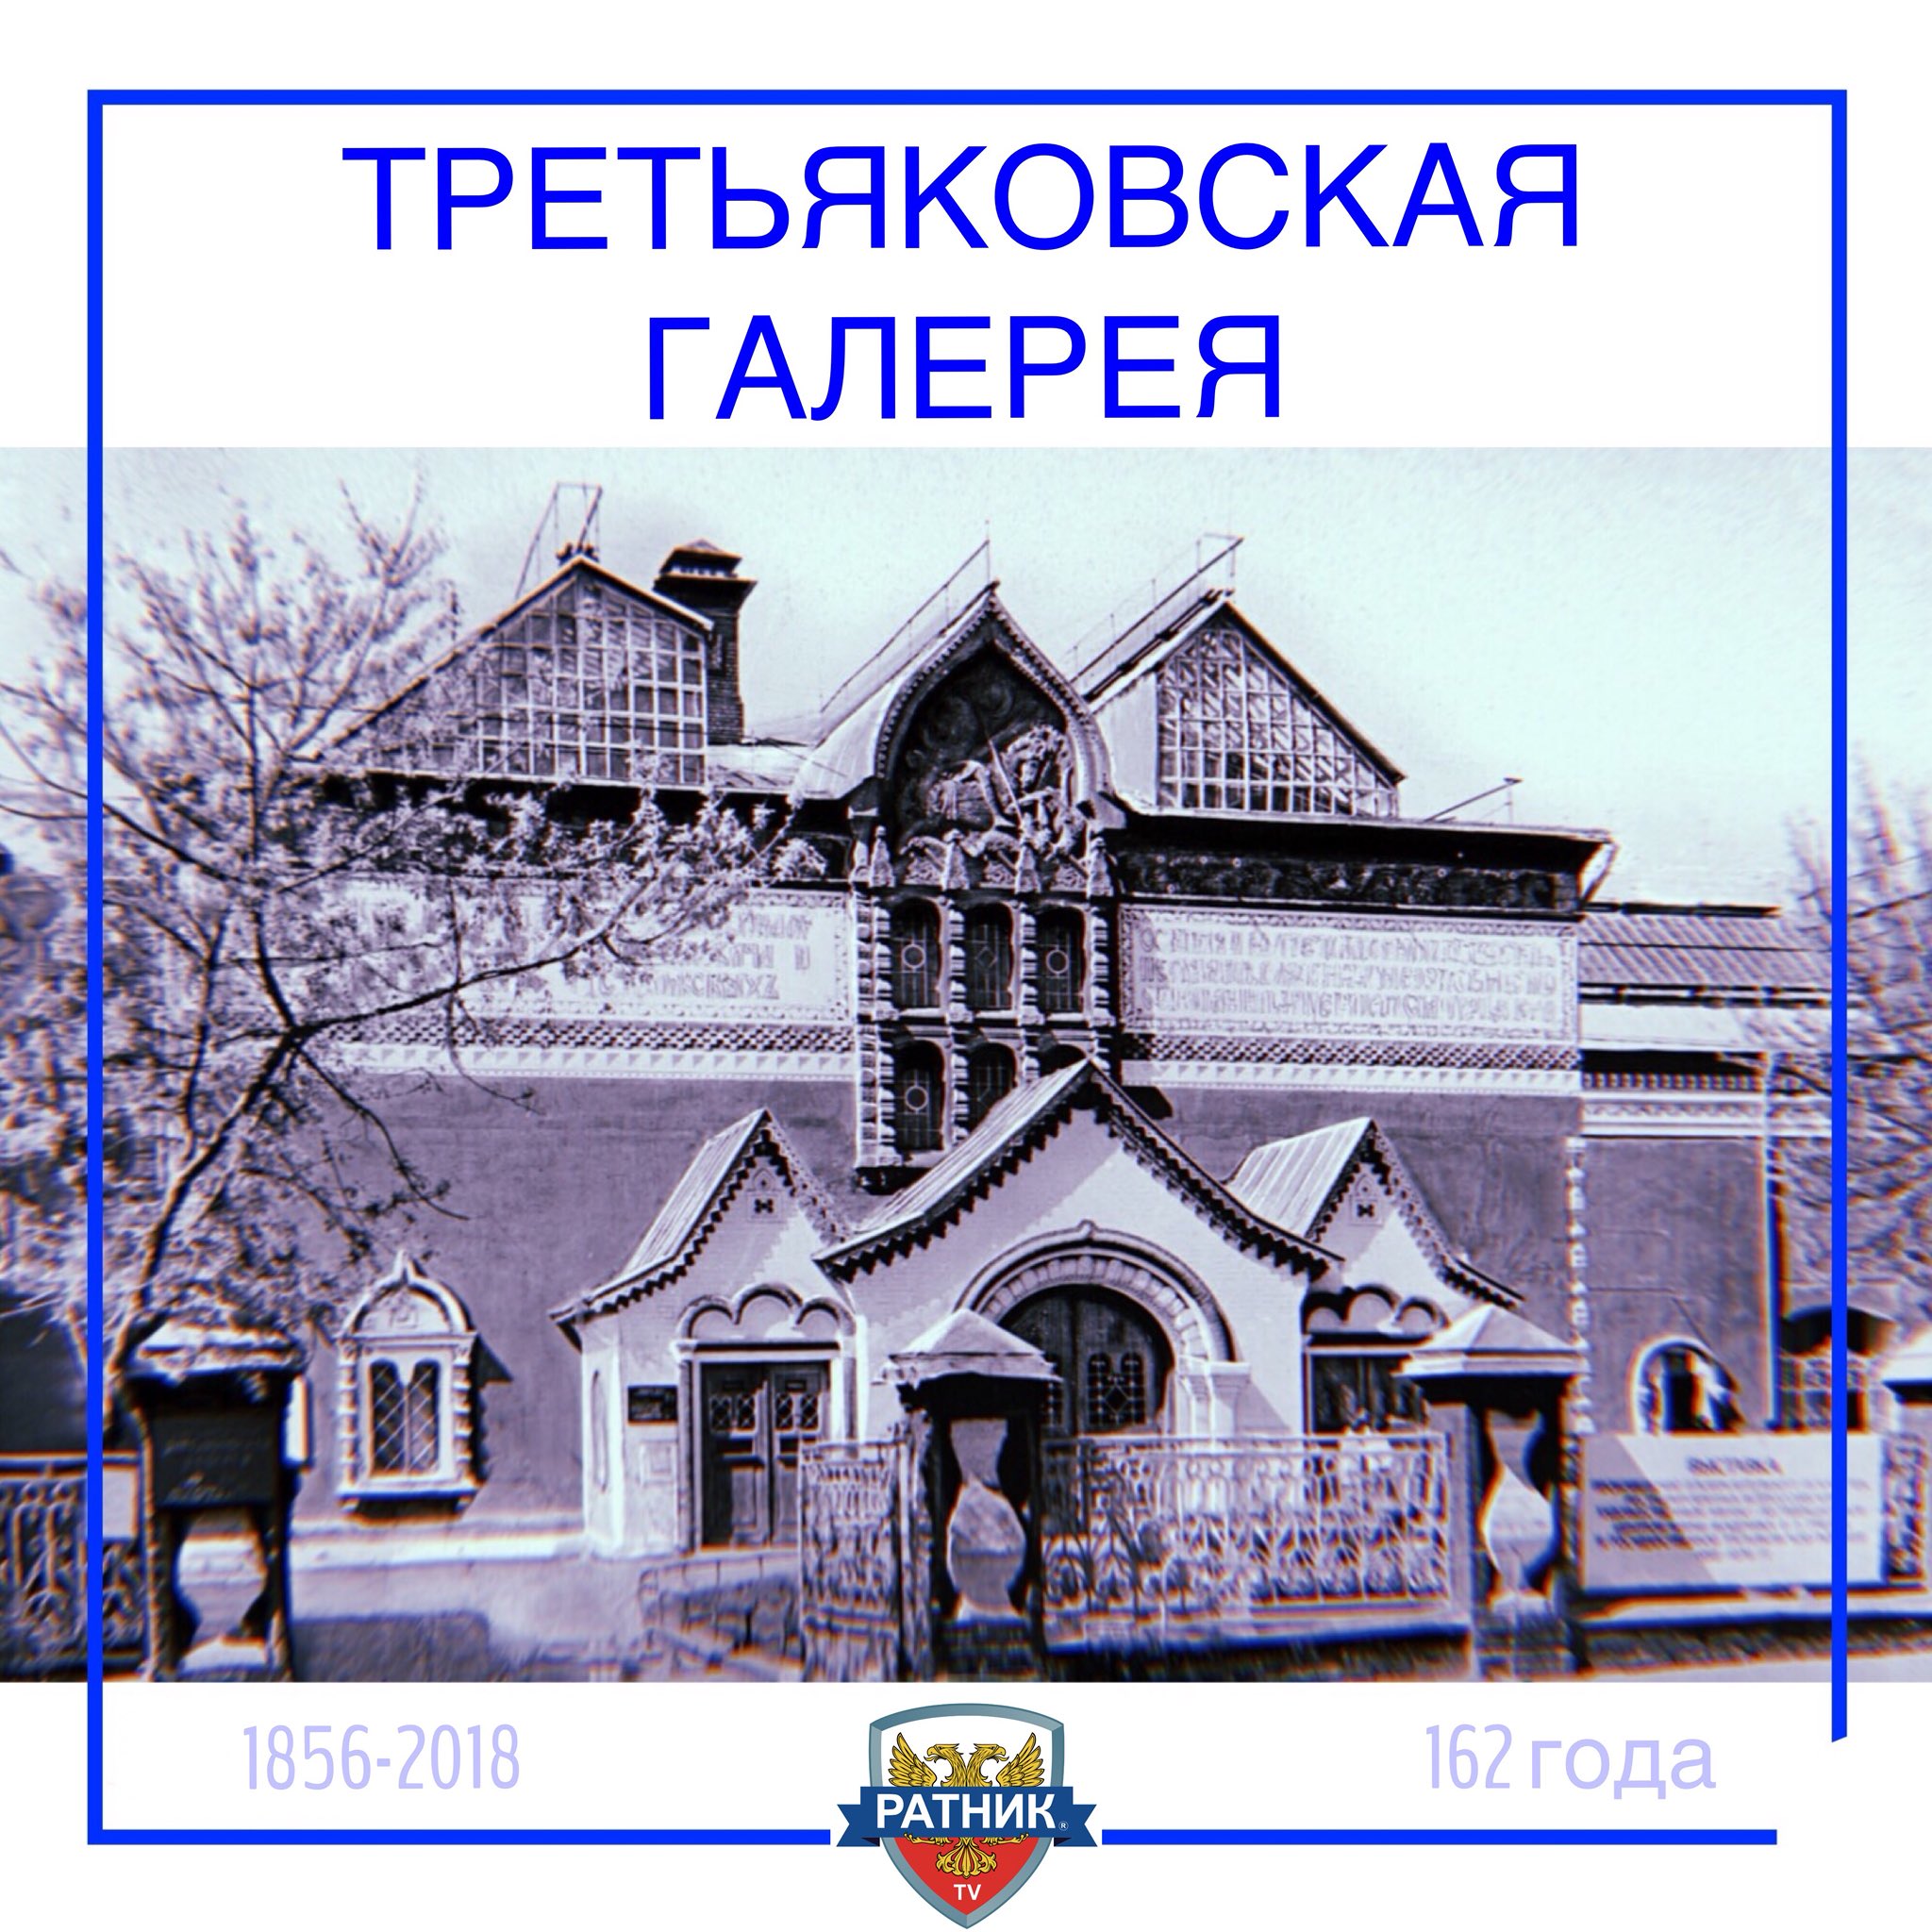 1856 — В Москве основана Третьяковская галерея